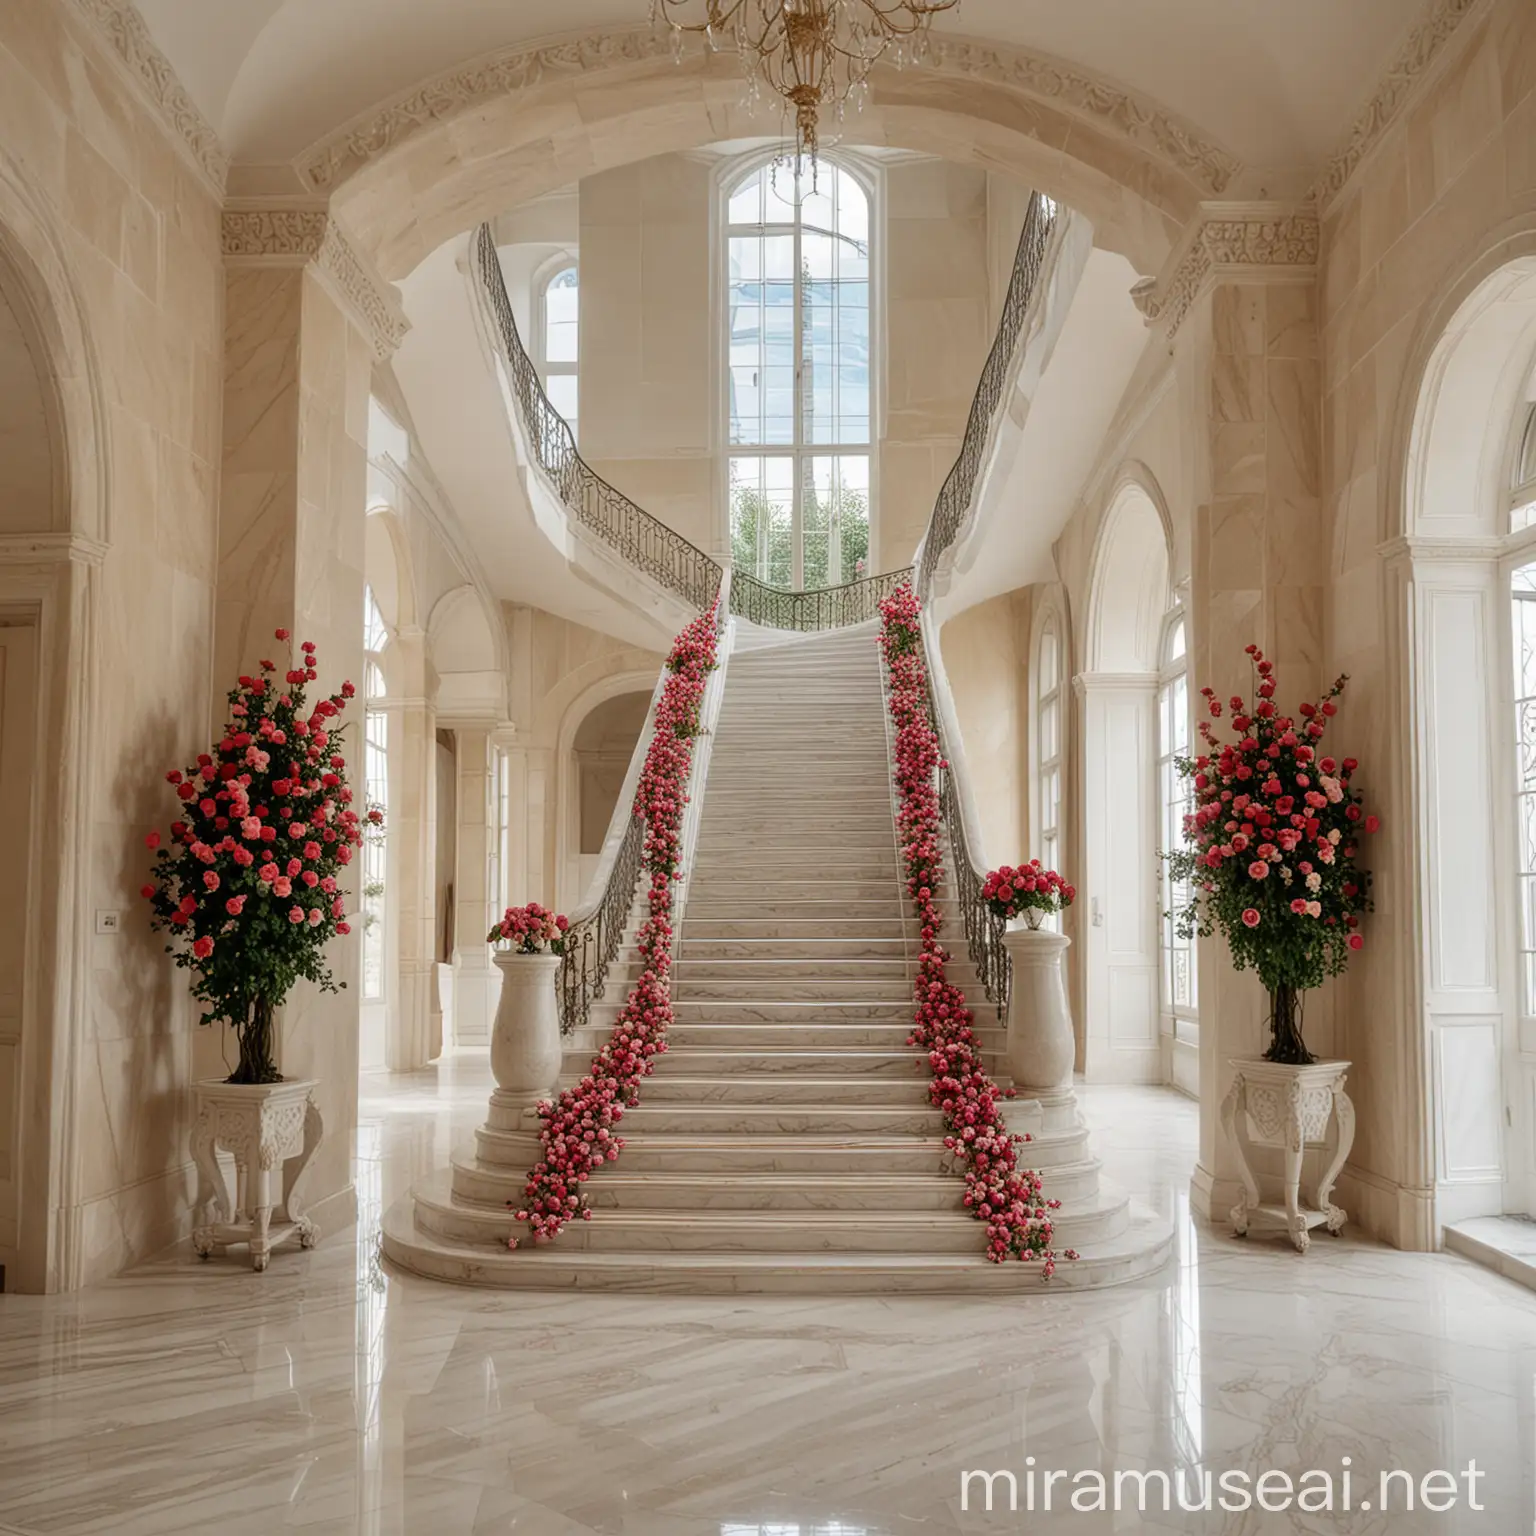 escalera grande de mármol ,muy hermosa y al fondo se ven grandes ventanales y un gran corredor .todo de mármol con algunas rosas  y una enredadera 